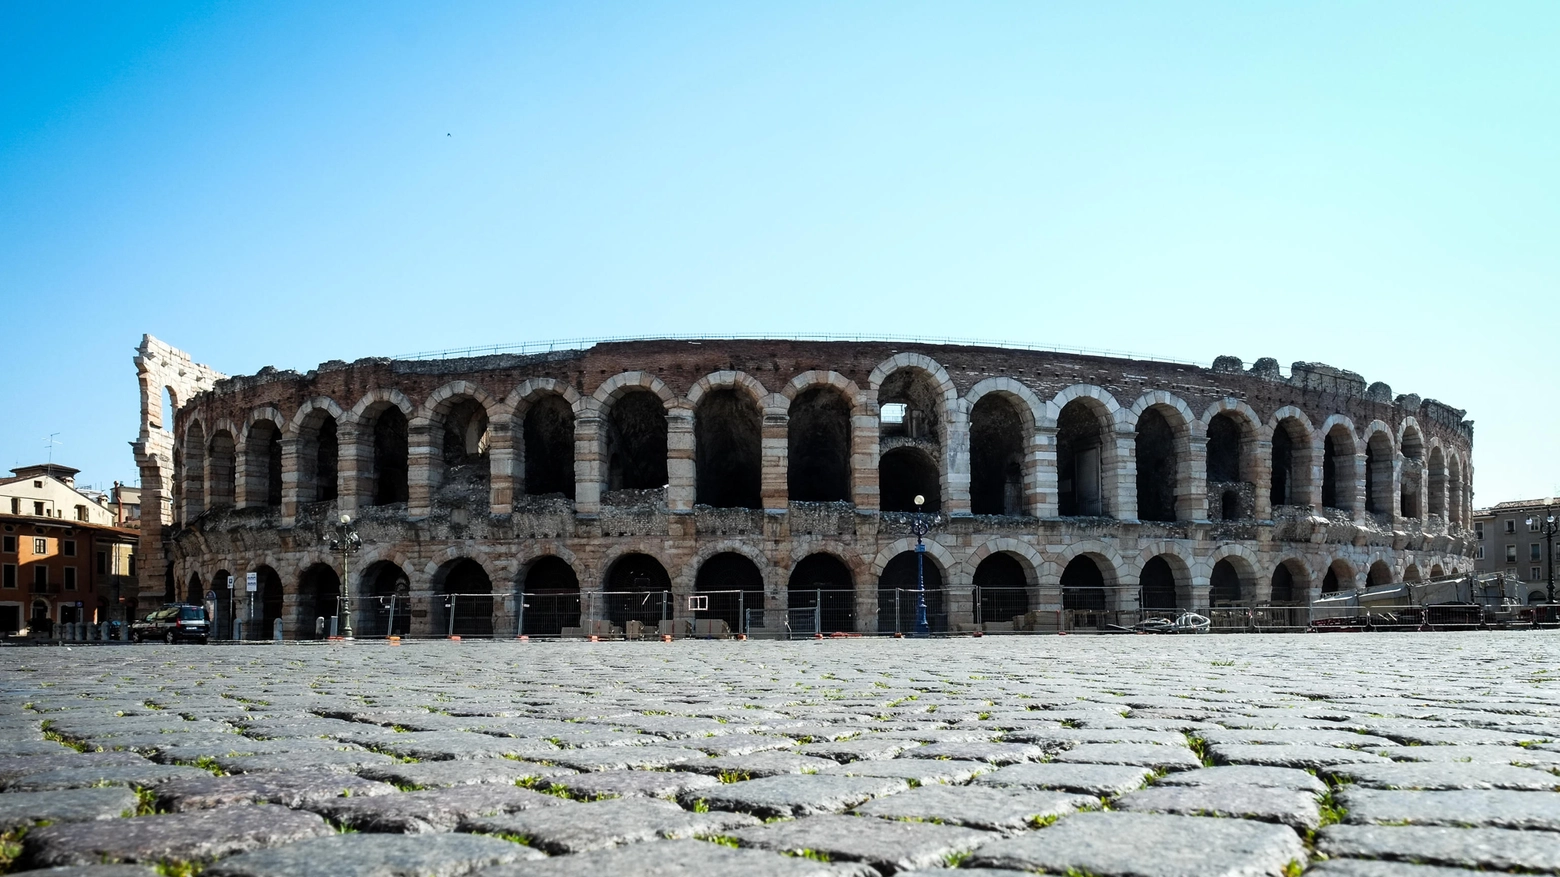 L'arena di Verona, in piazza Bra